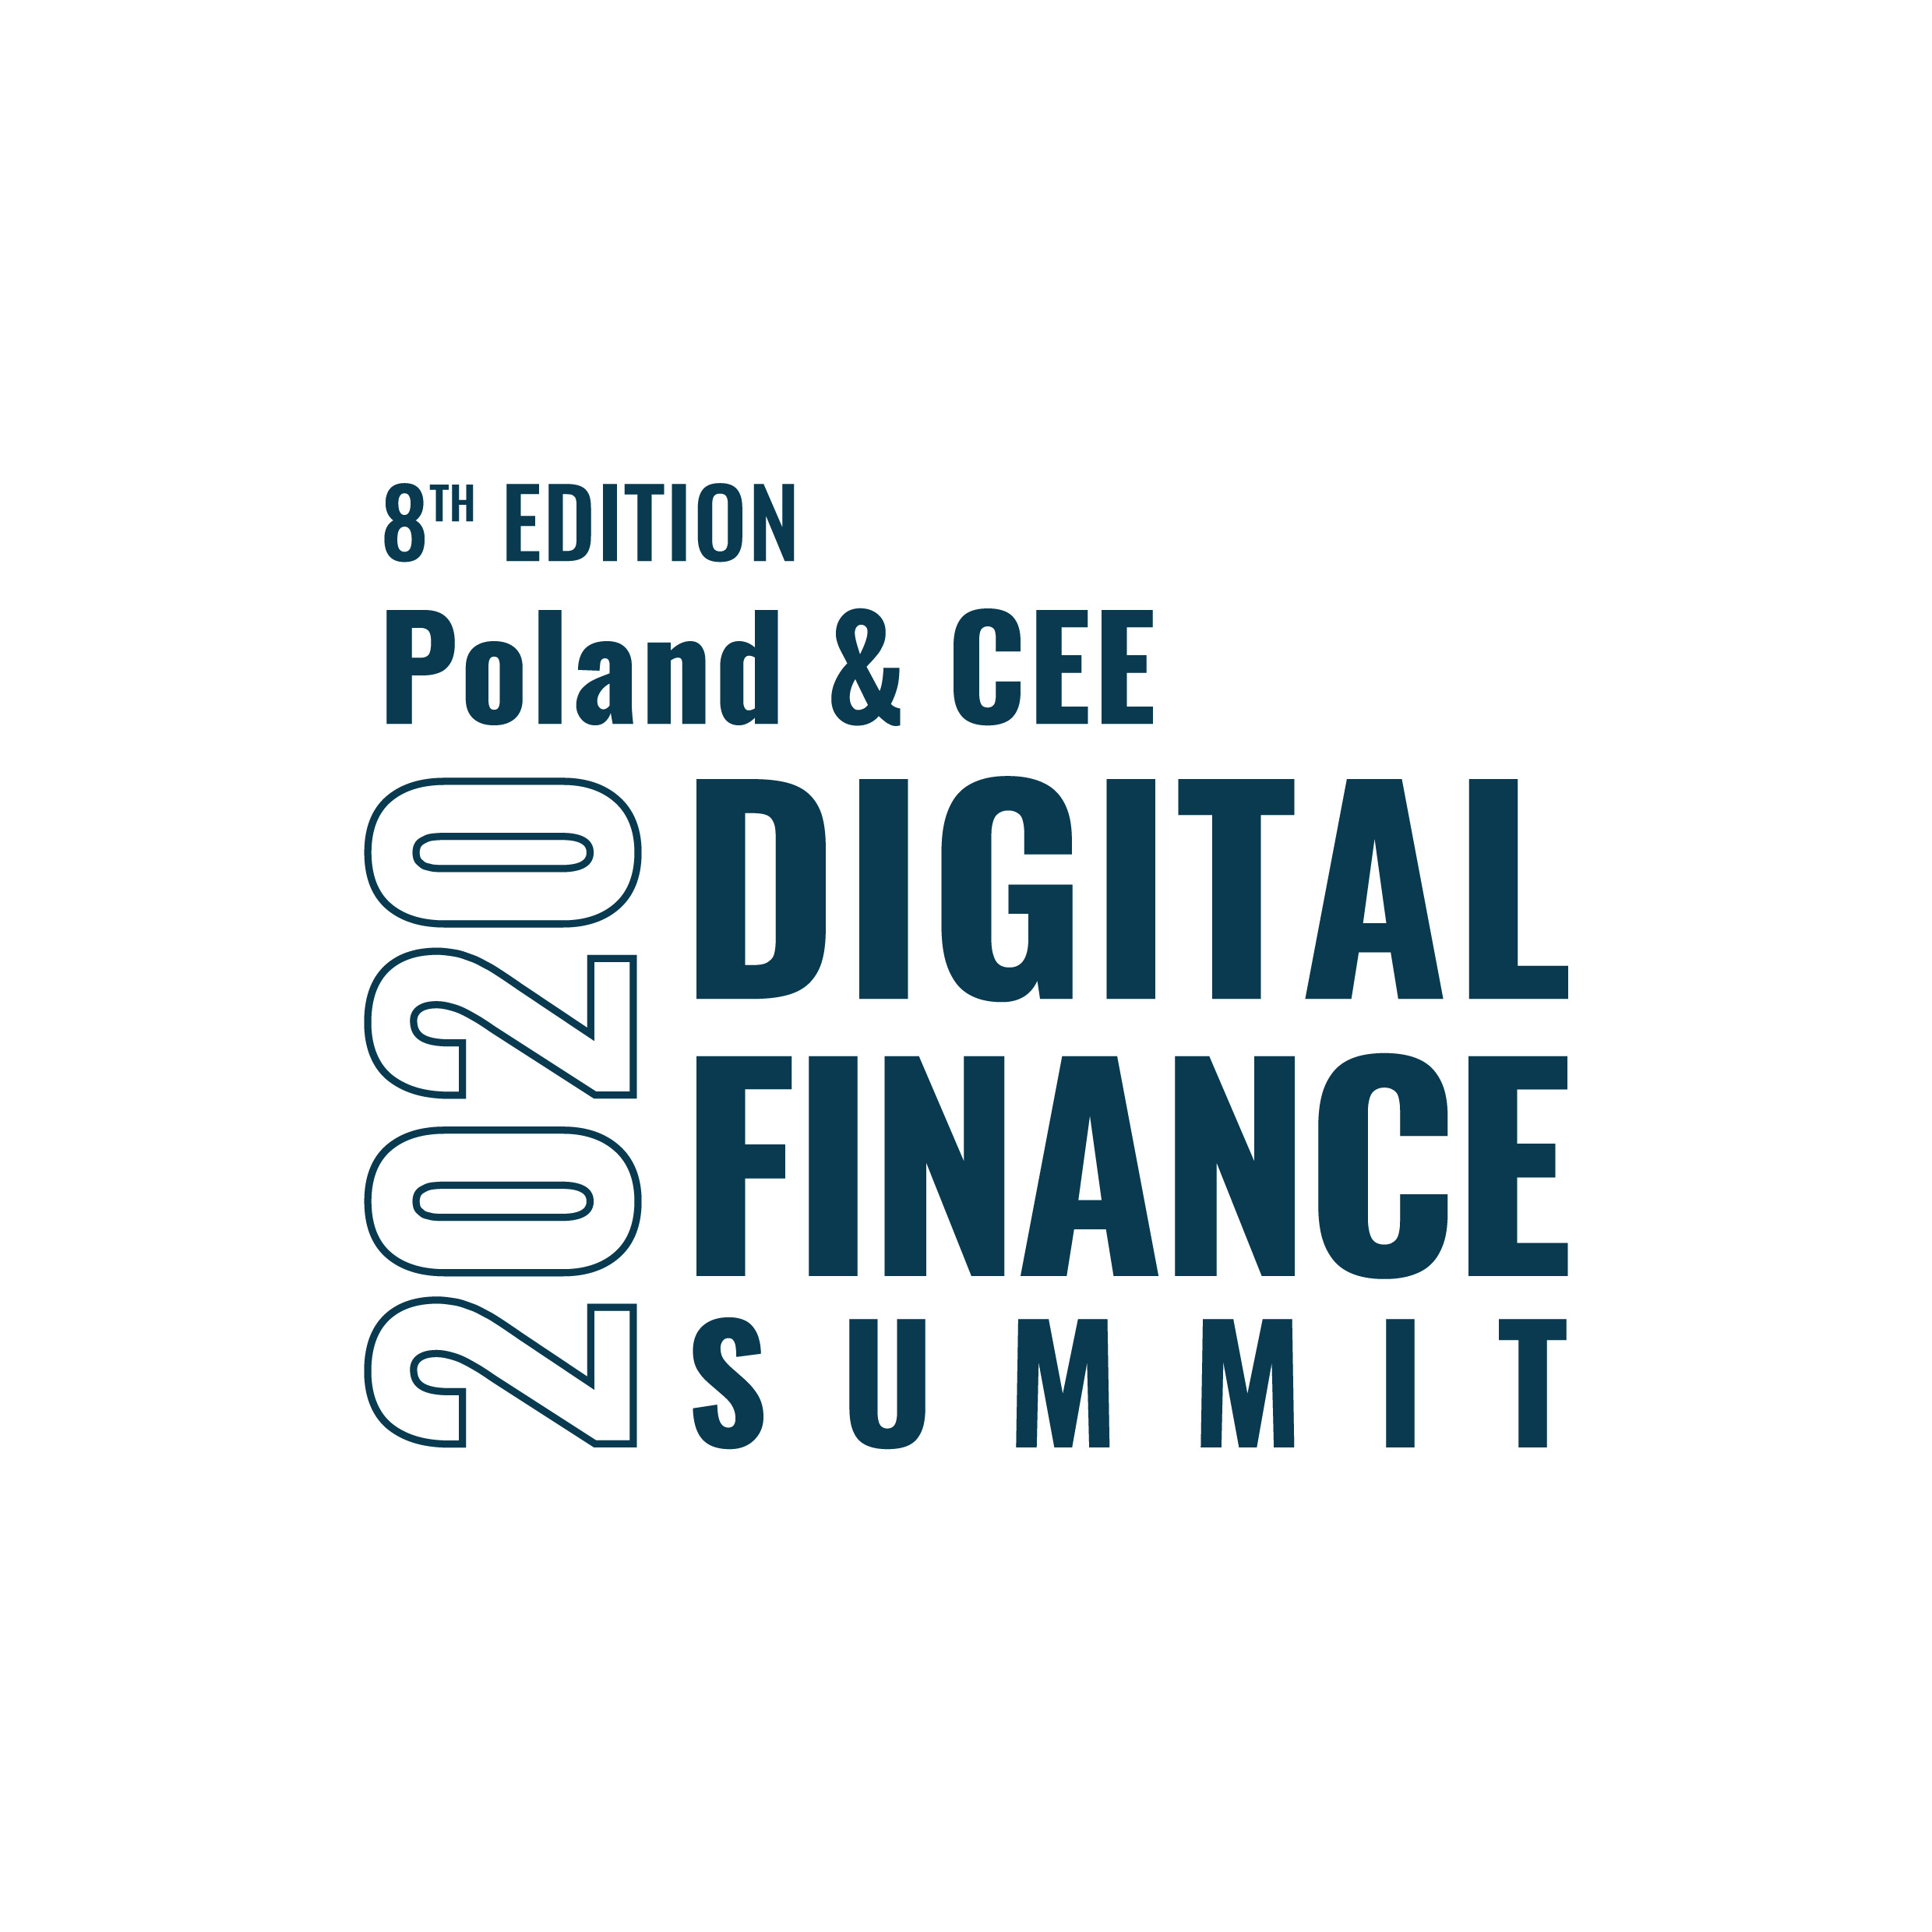 POLAND&CEE DIGITAL FINANCE SUMMIT 2020  organized by ECU